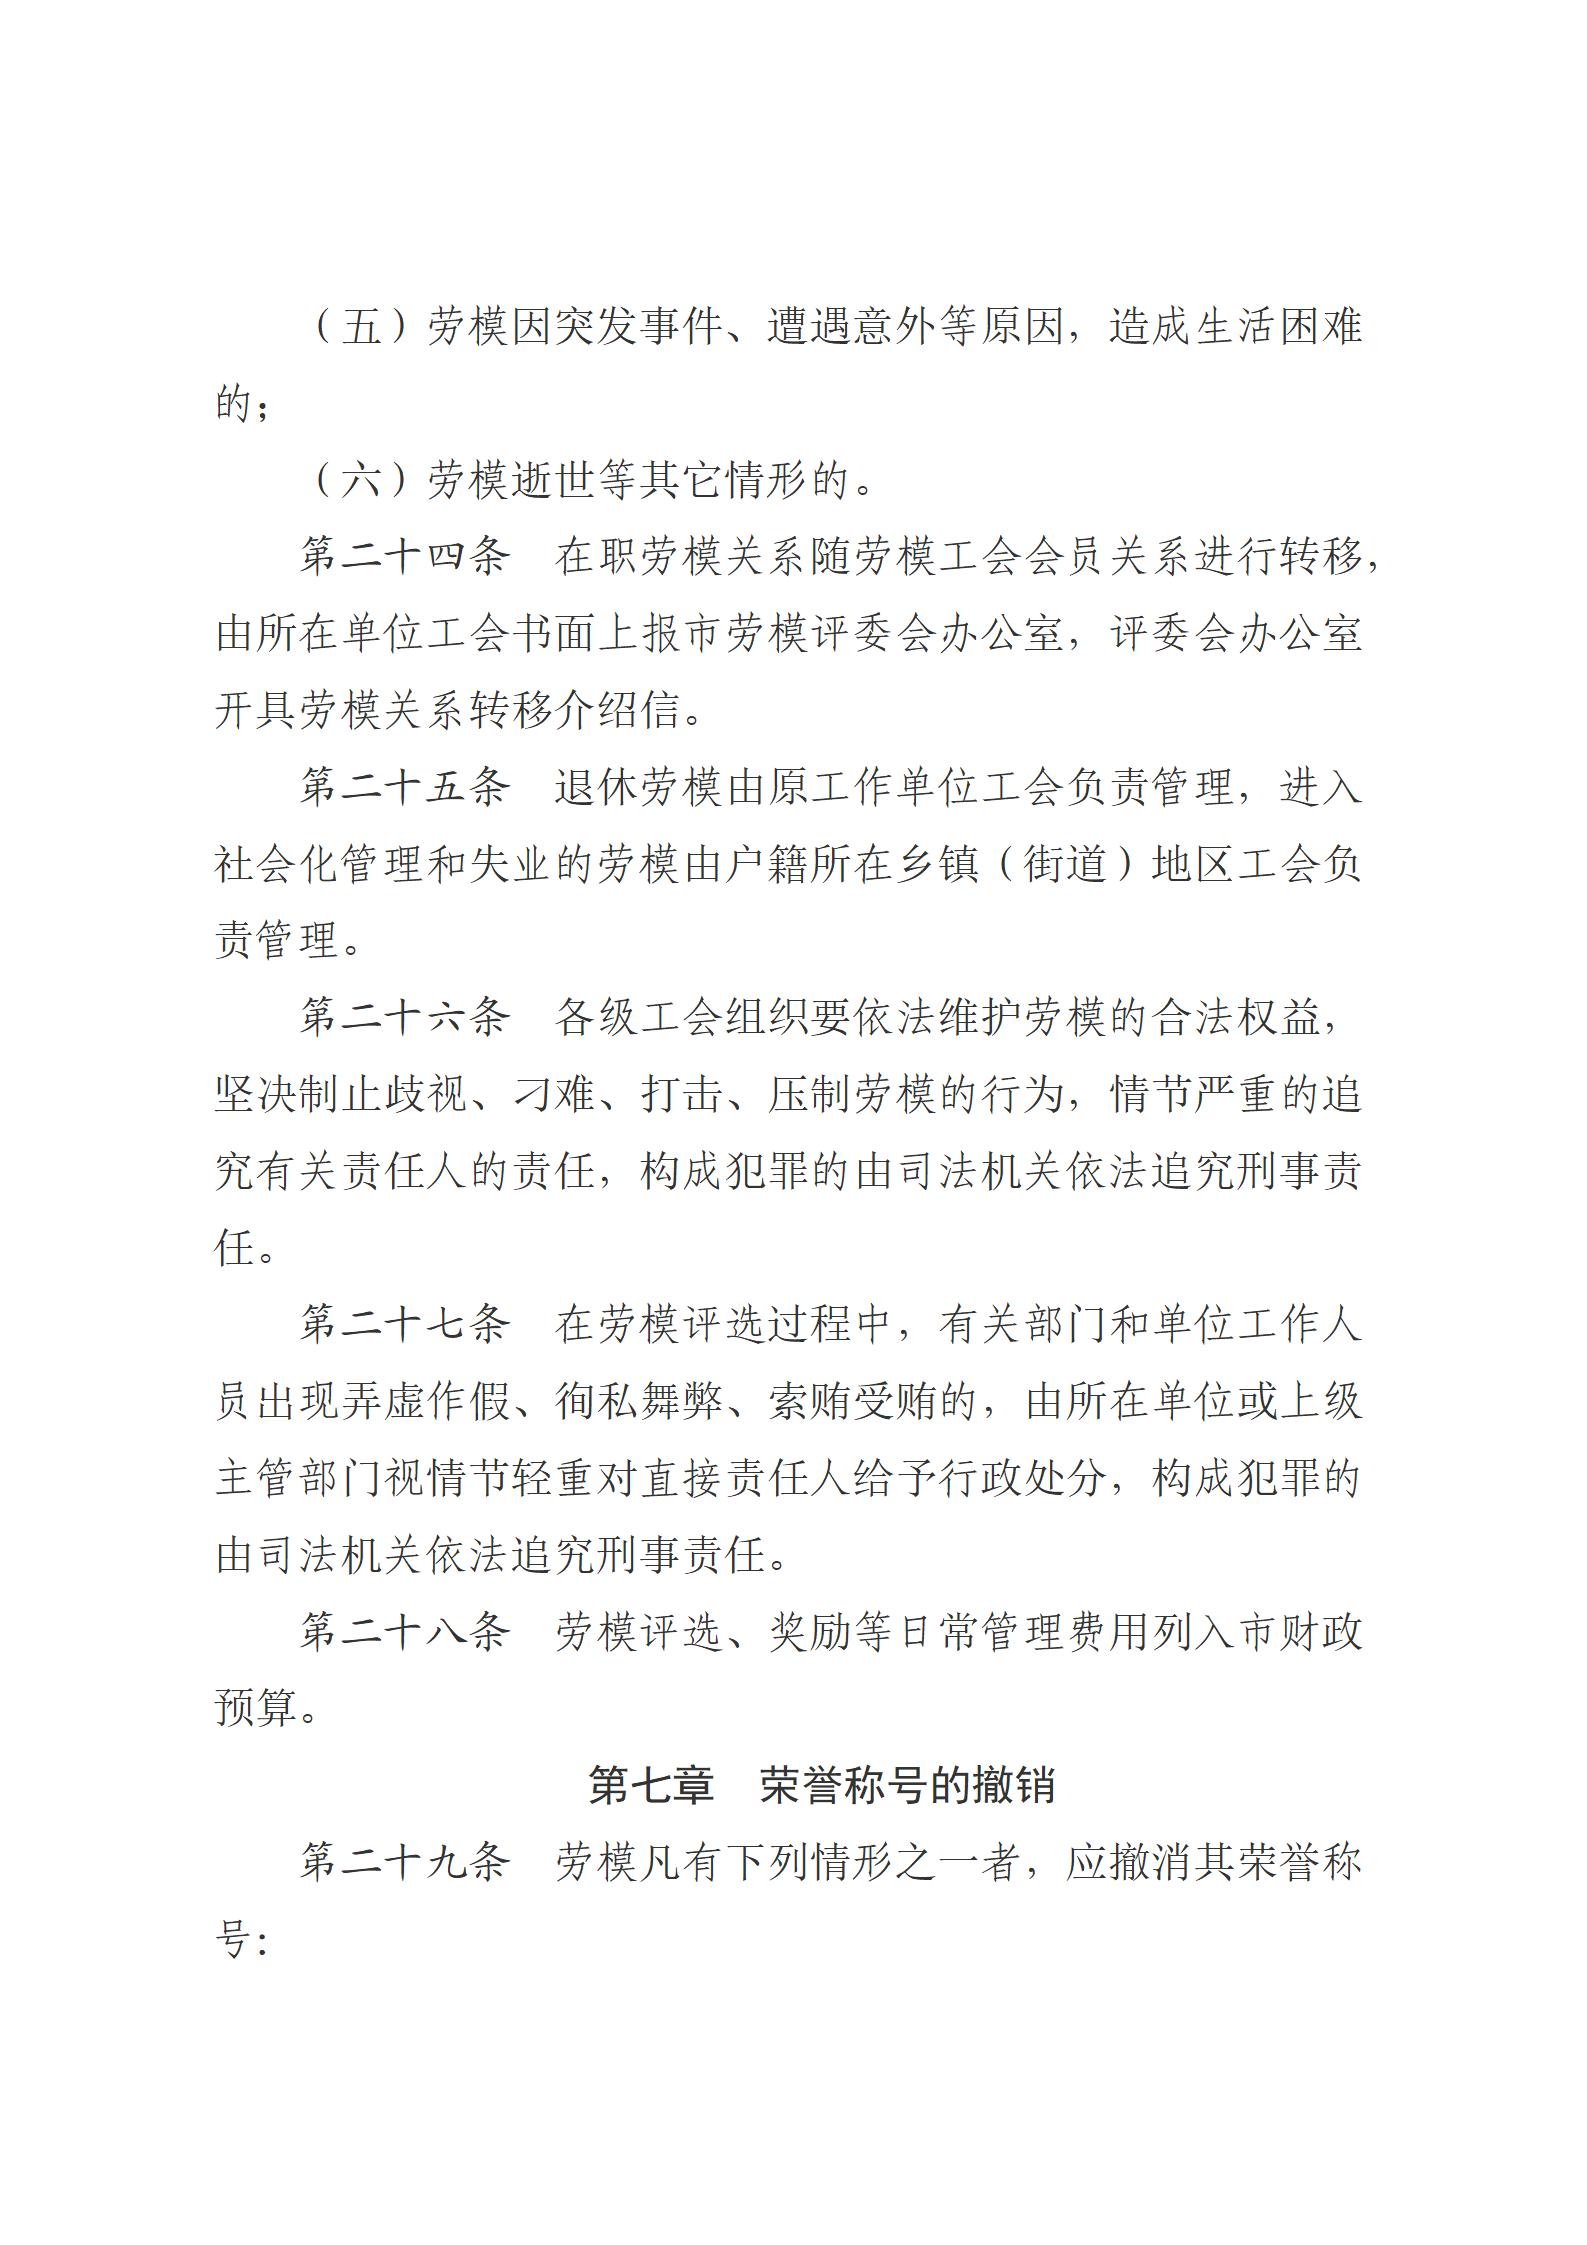 1.西宁市劳动模范评选和管理工作办法(1)_10.jpg